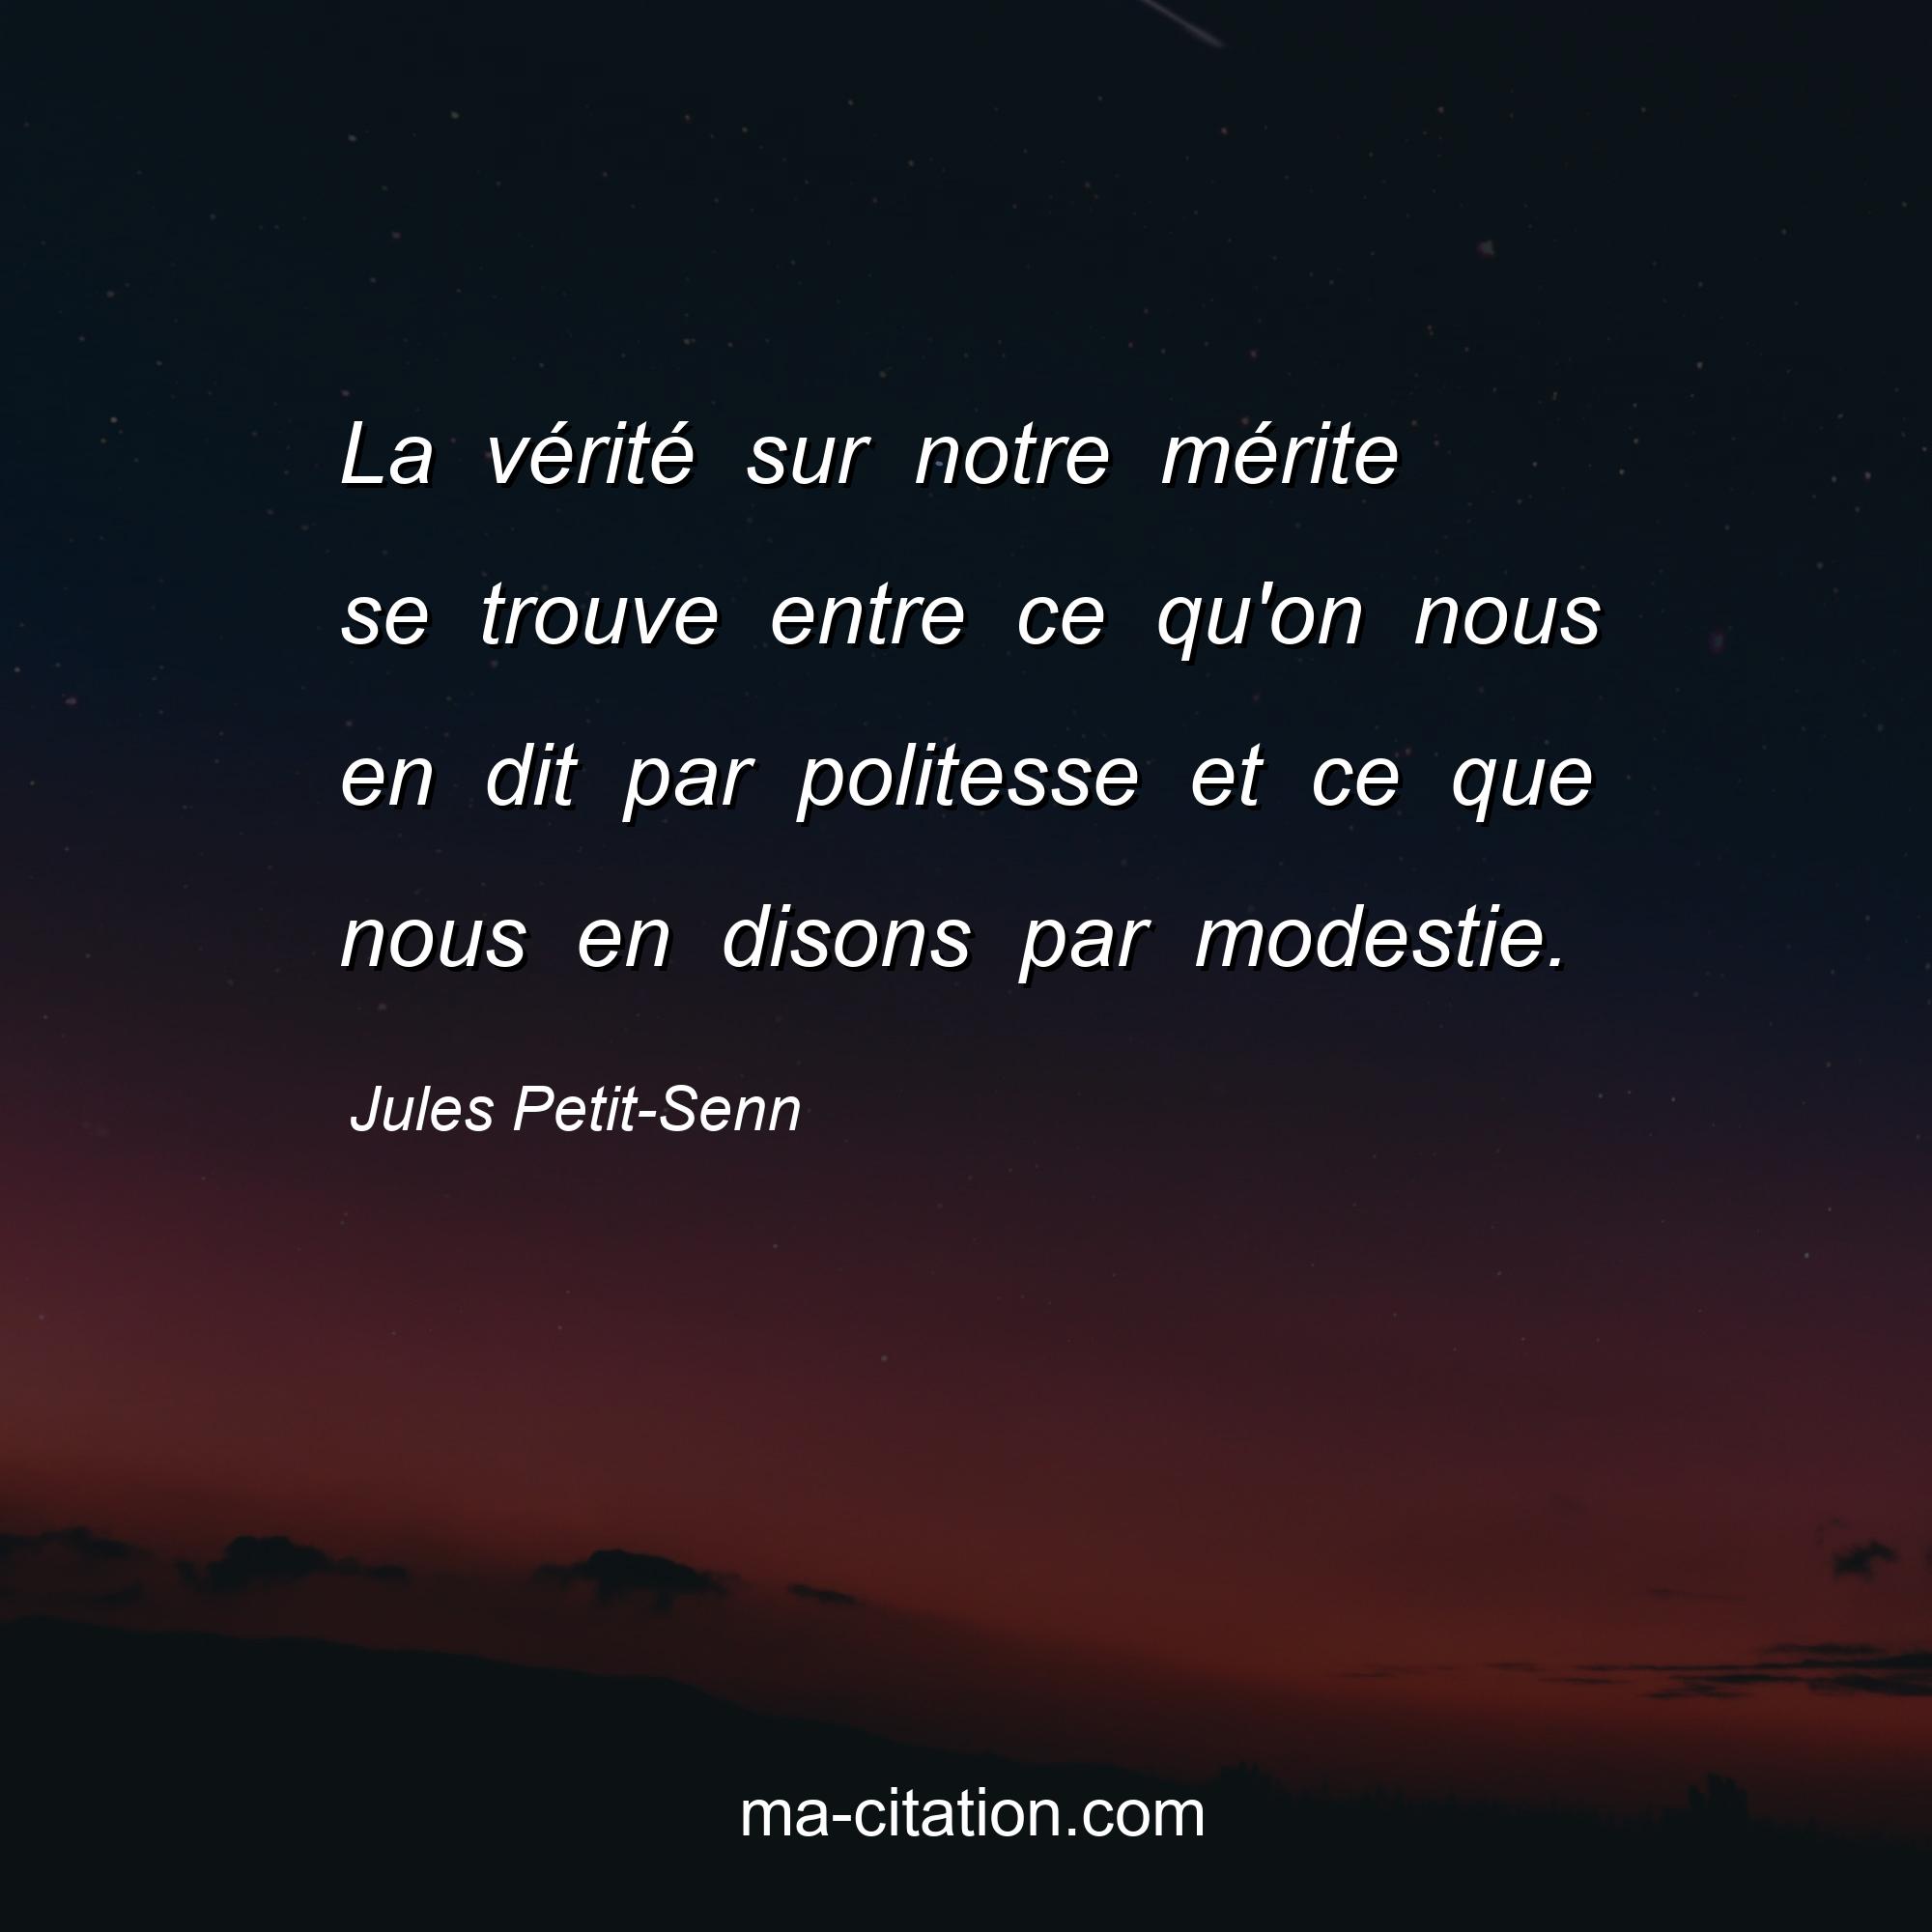 Jules Petit-Senn : La vérité sur notre mérite se trouve entre ce qu'on nous en dit par politesse et ce que nous en disons par modestie.